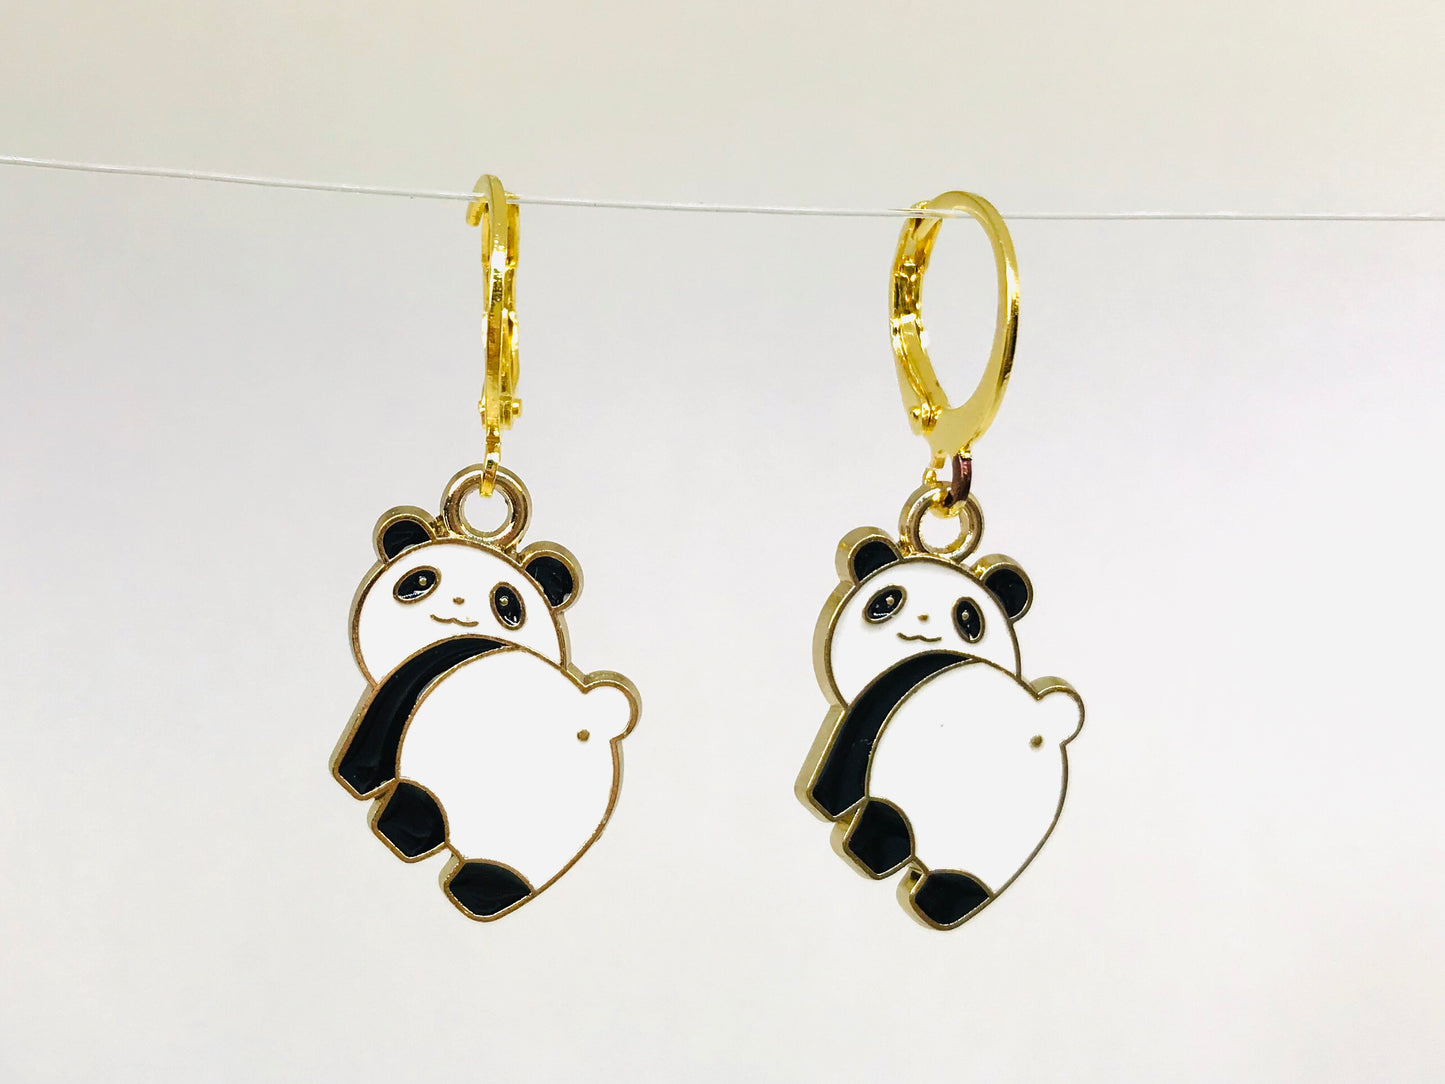 Panda Earrings